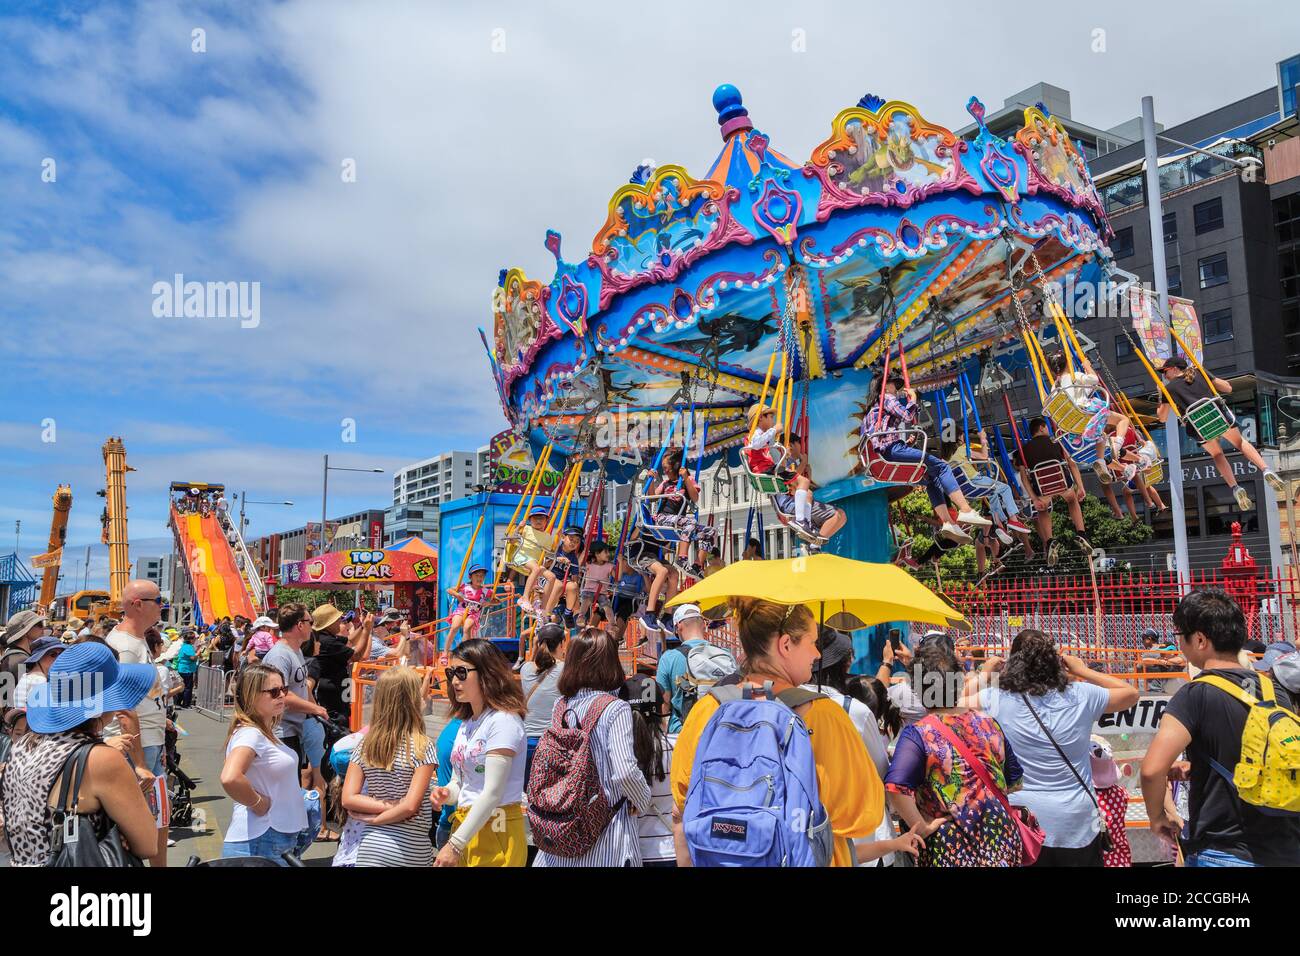 Tours de carnaval. Les enfants sur un carrousel de balançoire, entouré d'une grande foule. Photographié à Auckland, Nouvelle-Zélande, 1/27/2019 Banque D'Images